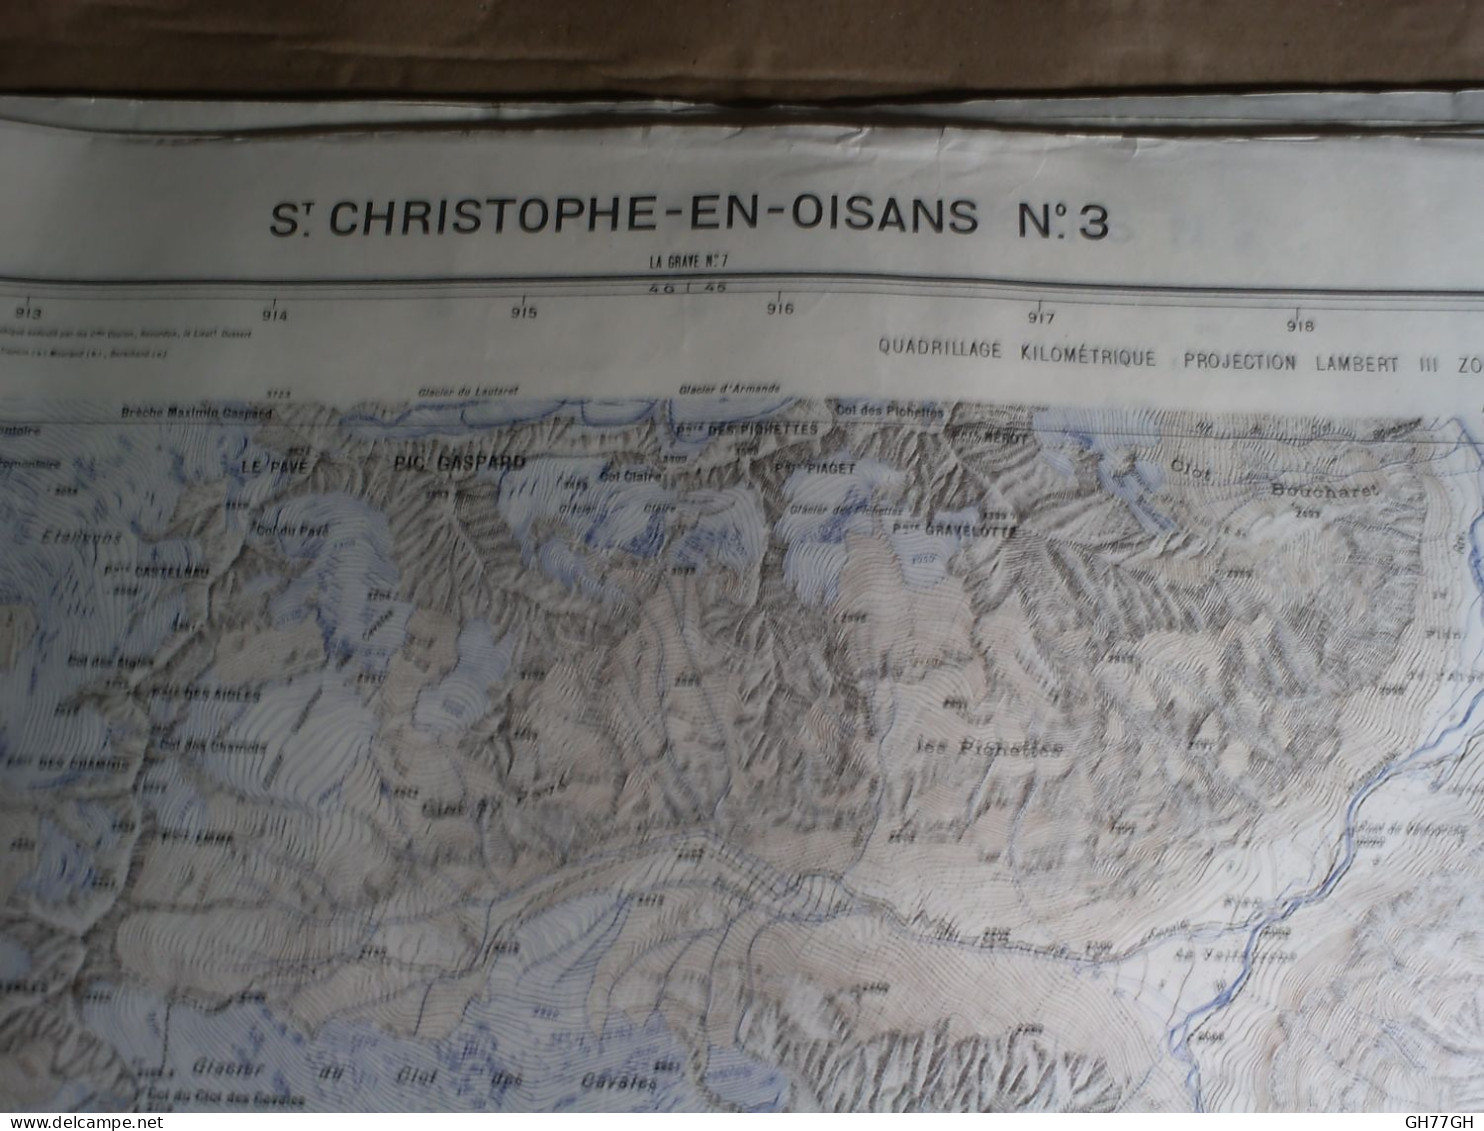 CARTE SAINT CHRISTOPHE-EN-OISANS (ISERE) 1/20000ème -51x73cm -1cm=200m -mise à Jour De 1932 -IGN FRANCE - Cartes Topographiques